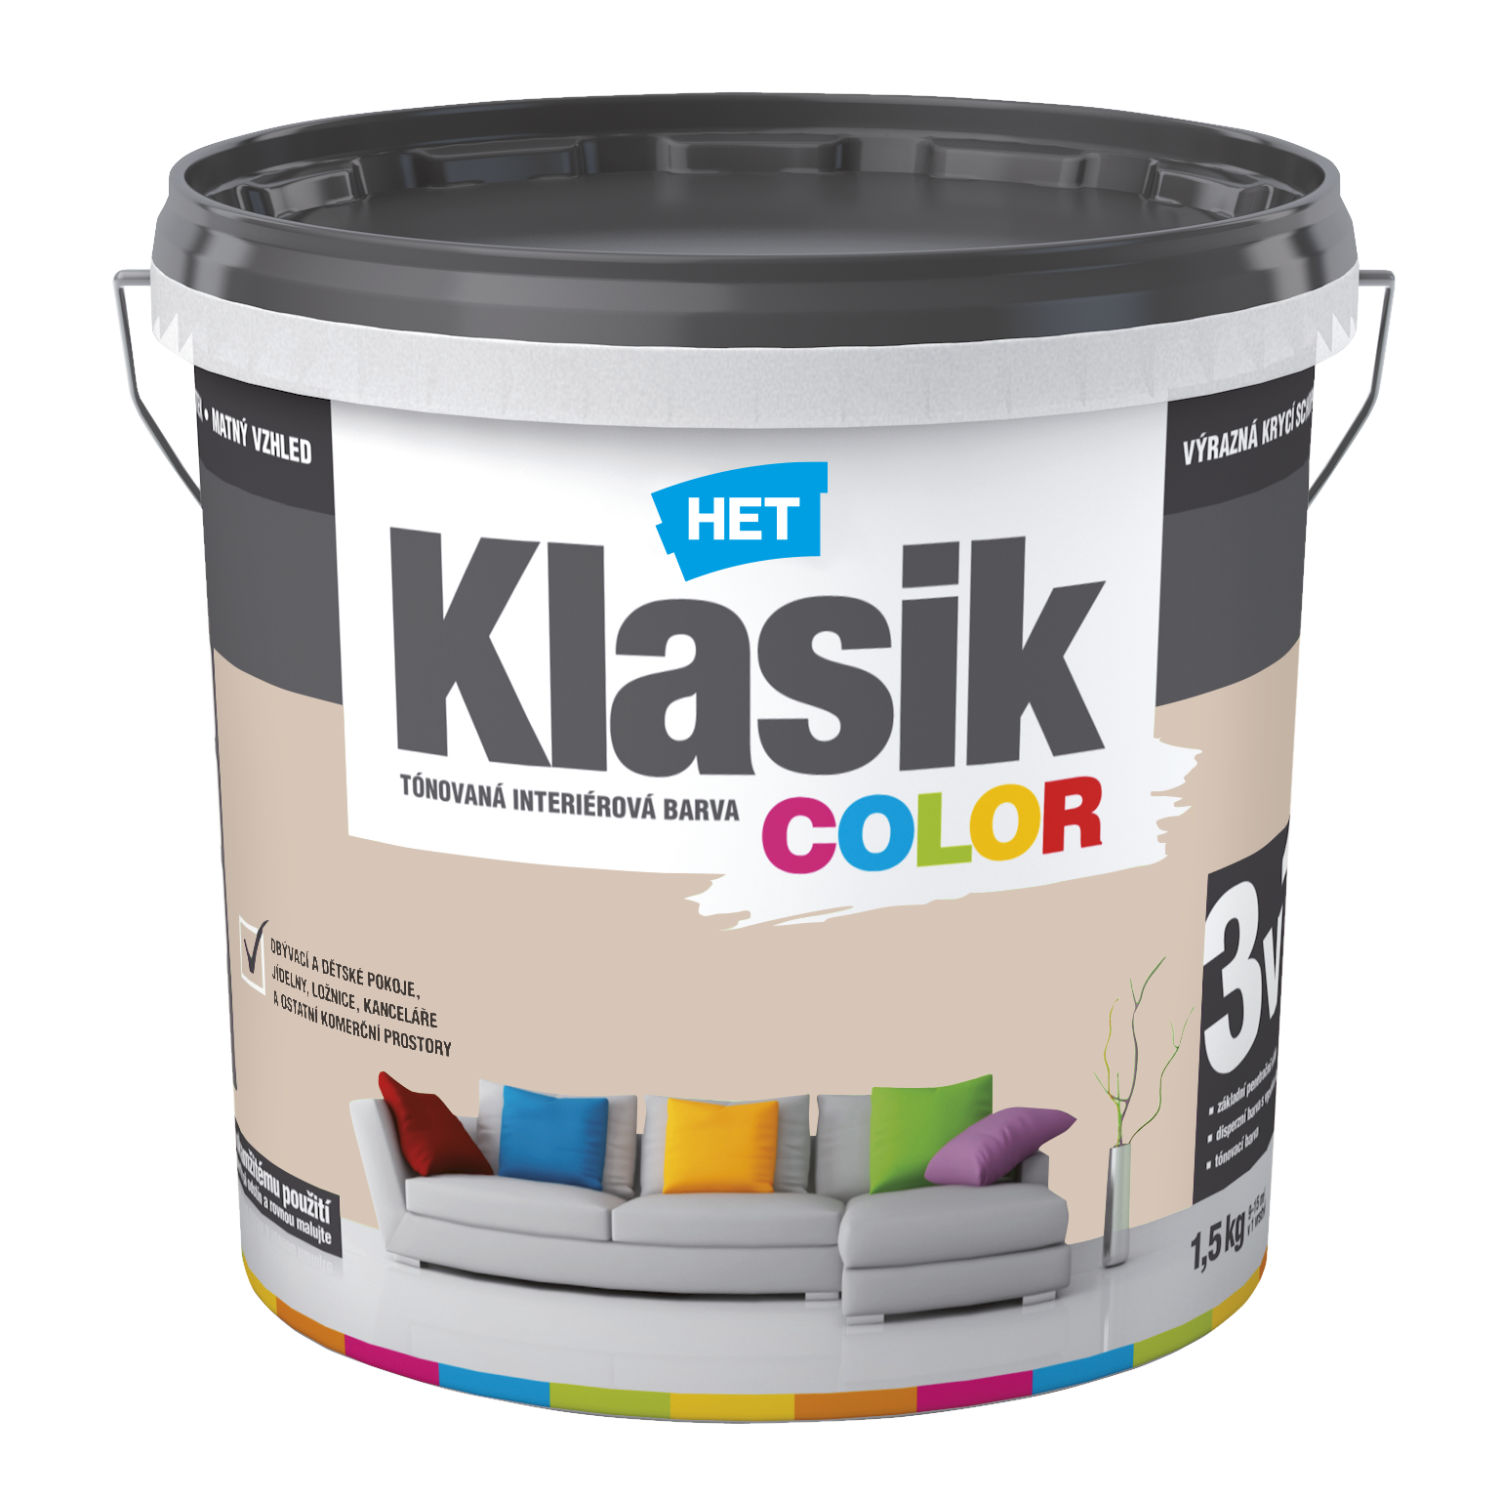 HET Klasik COLOR tónovaná interiérová akrylátová disperzná oteruvzdorná farba 1,5 kg, KC0238 - béžový muškátový